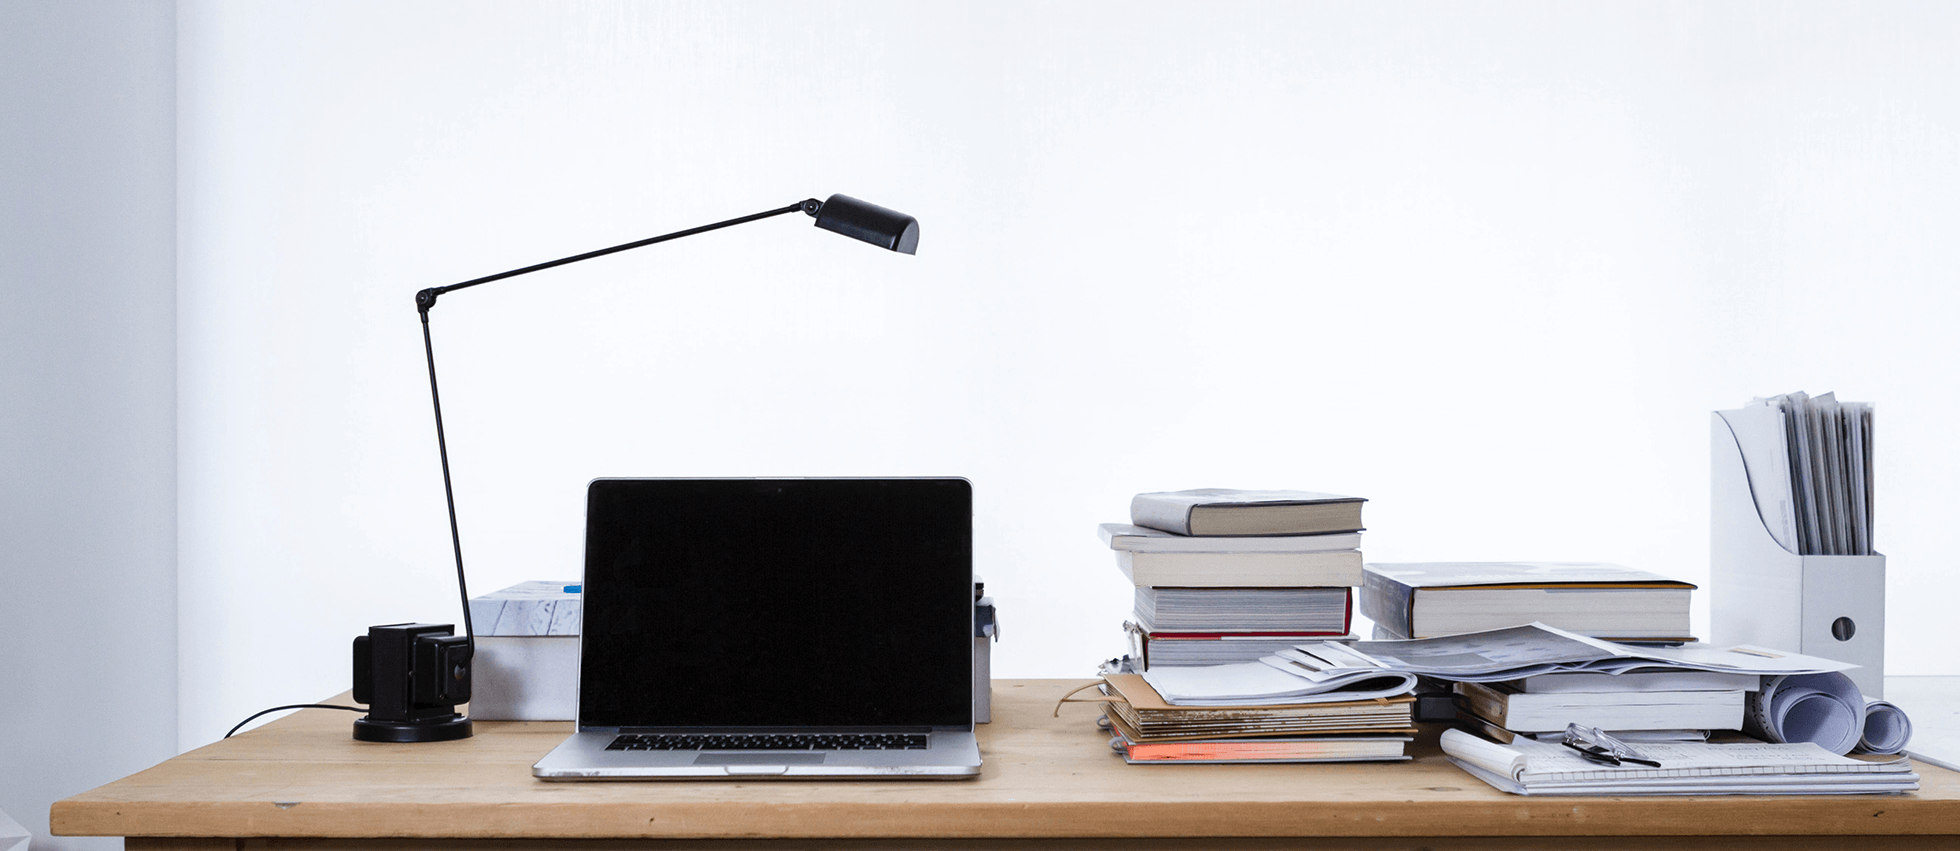 Ilustracja przedstawia laptop na biurku. Obok znajdują się lampka i książki.